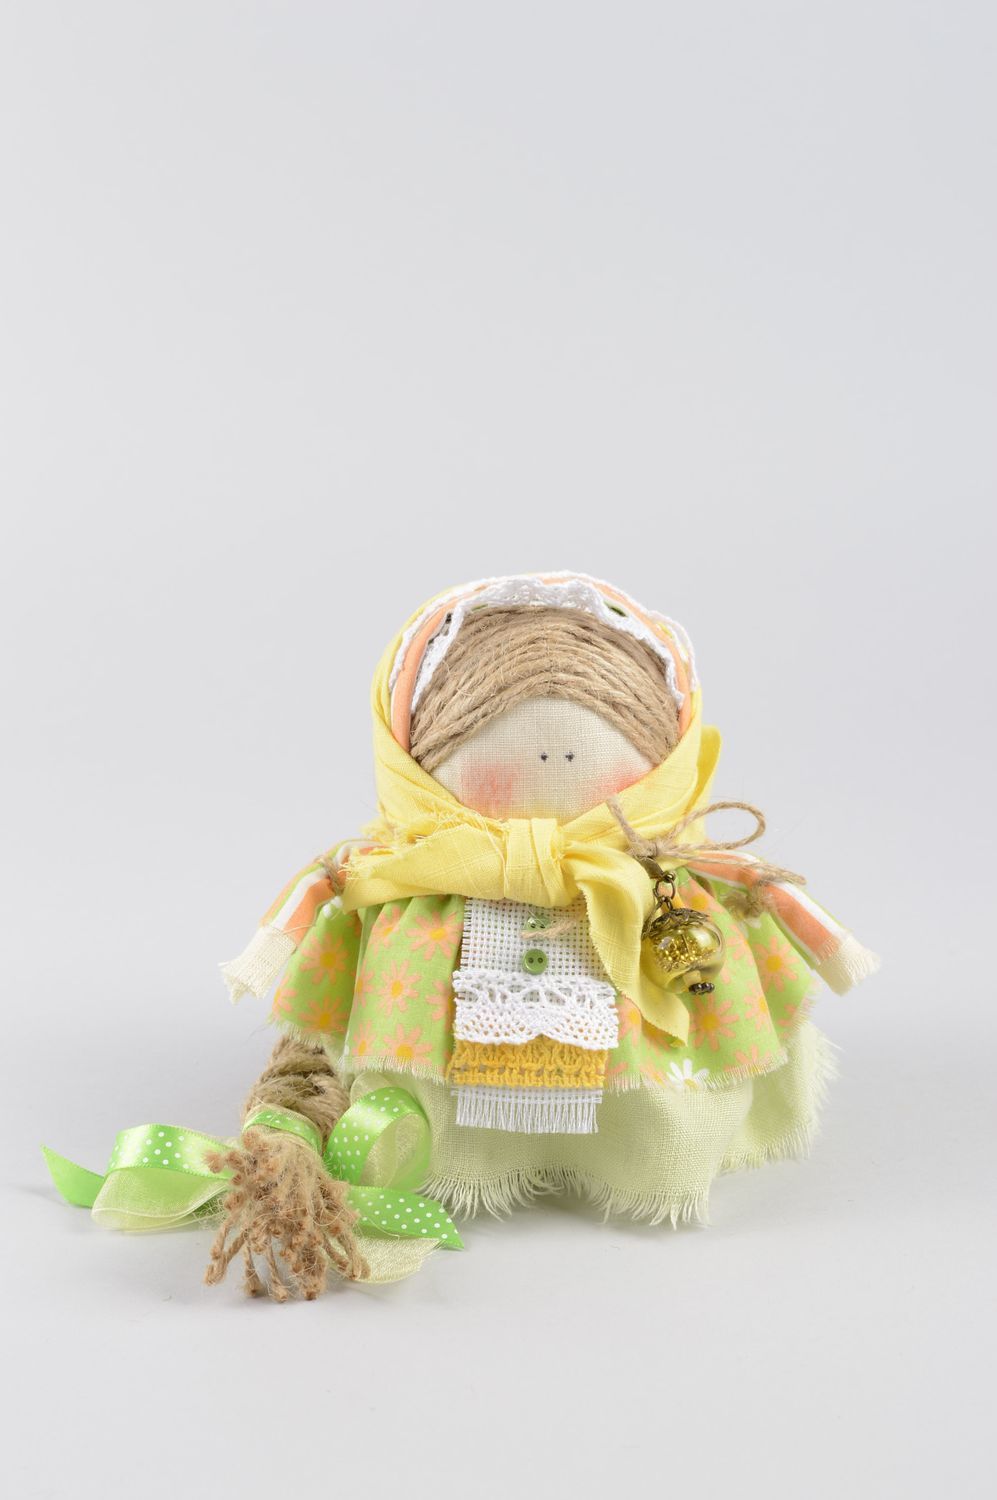 Кукла ручной работы обереговая кукла народная кукла оберег крупеничка с косой фото 1